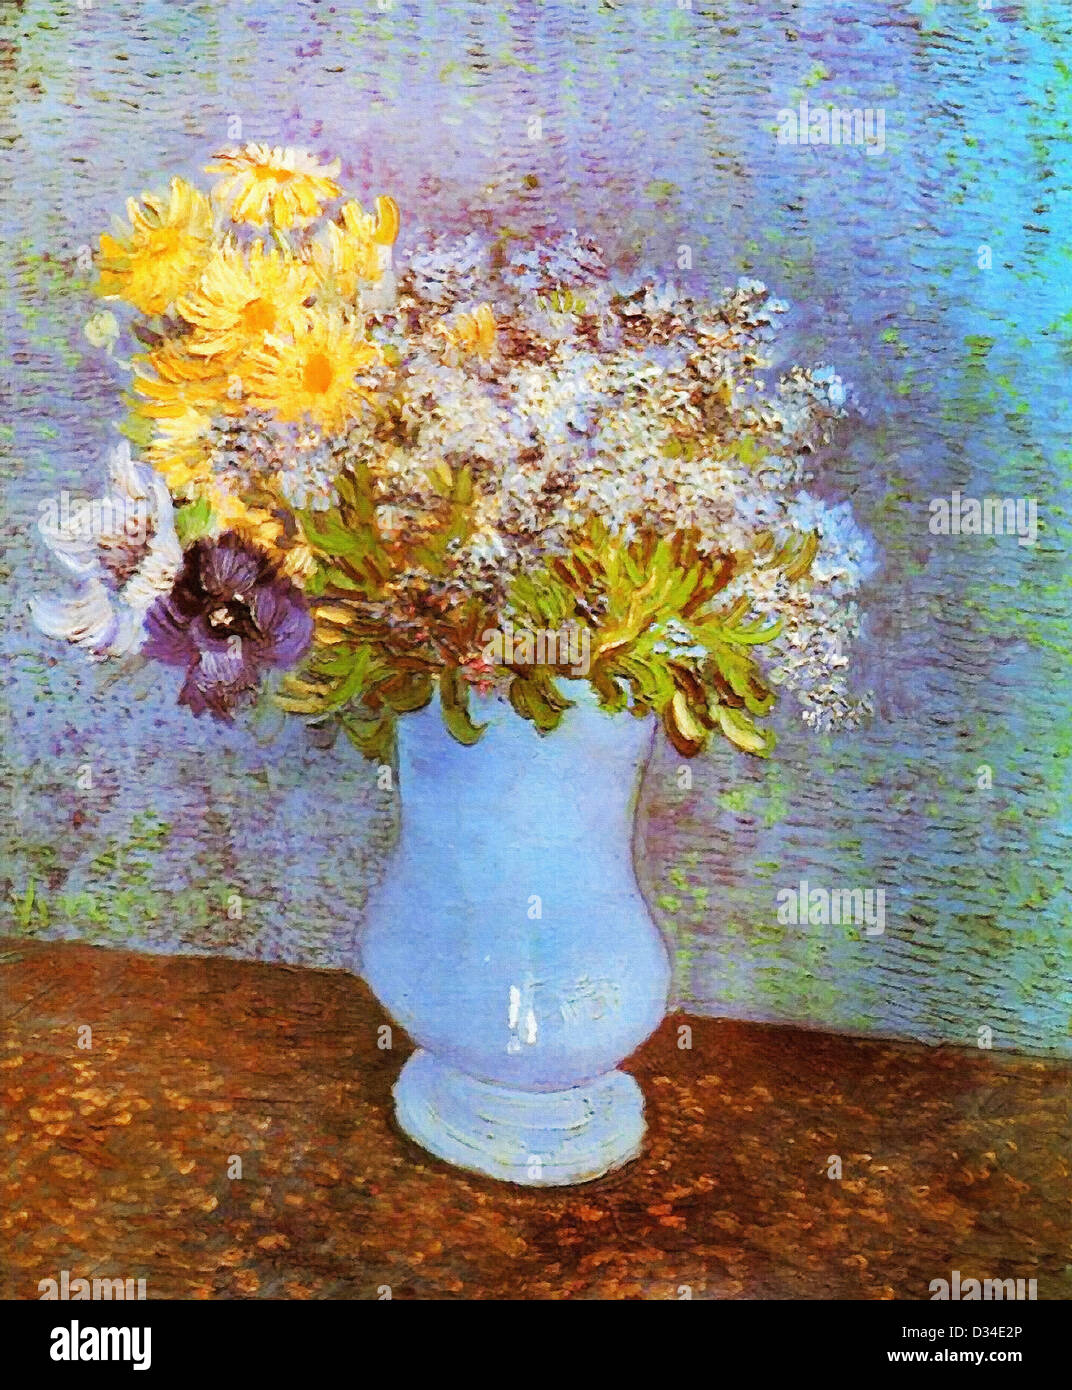 Vincent Van Gogh: Vase mit Flieder, Margeriten und Anemonen. 1887 Öl auf  Leinwand. Musée d ' Art et d ' Histoire, Genf, Schweiz Stockfotografie -  Alamy